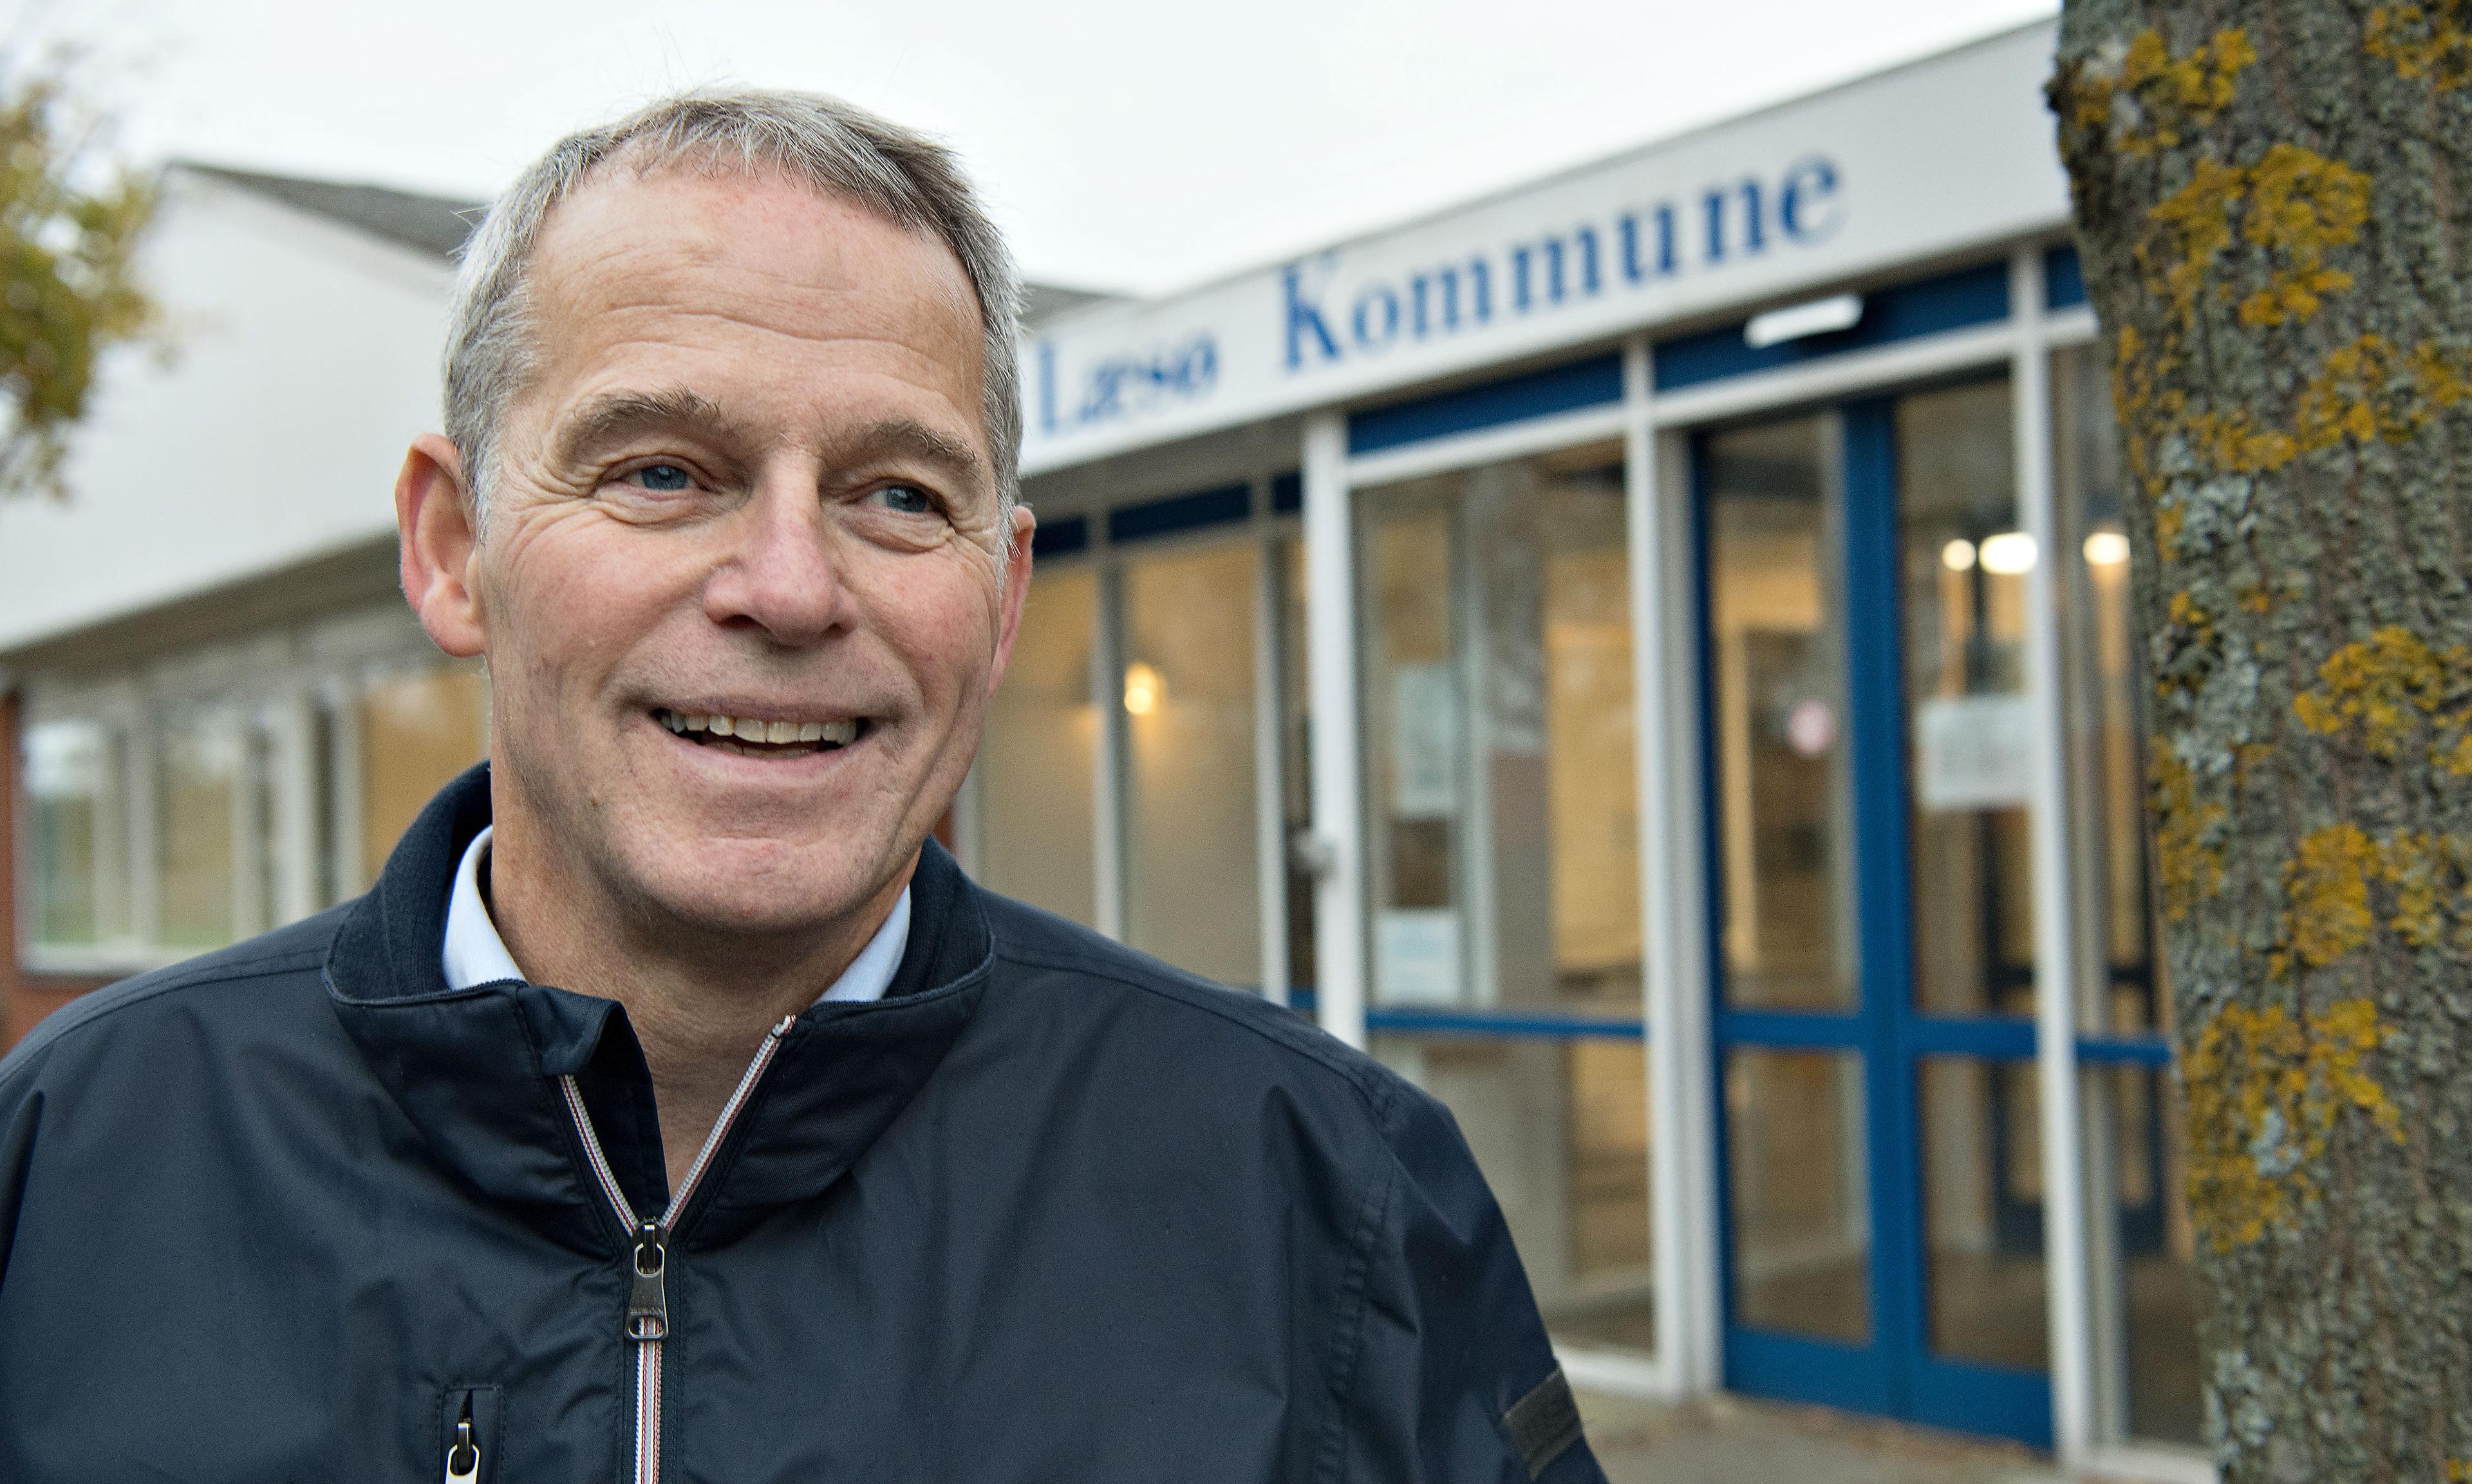 Efter 43 år i bankverdenen er Karsten Nielsen klar til at prøve noget nyt. Sidste gang han tog et stort nyt skridt var, da han flyttede til Læsø. Dengang var Læsøboerne den ubekendte for mig - denne gang er det bare jobbet, der er den ubekendte.